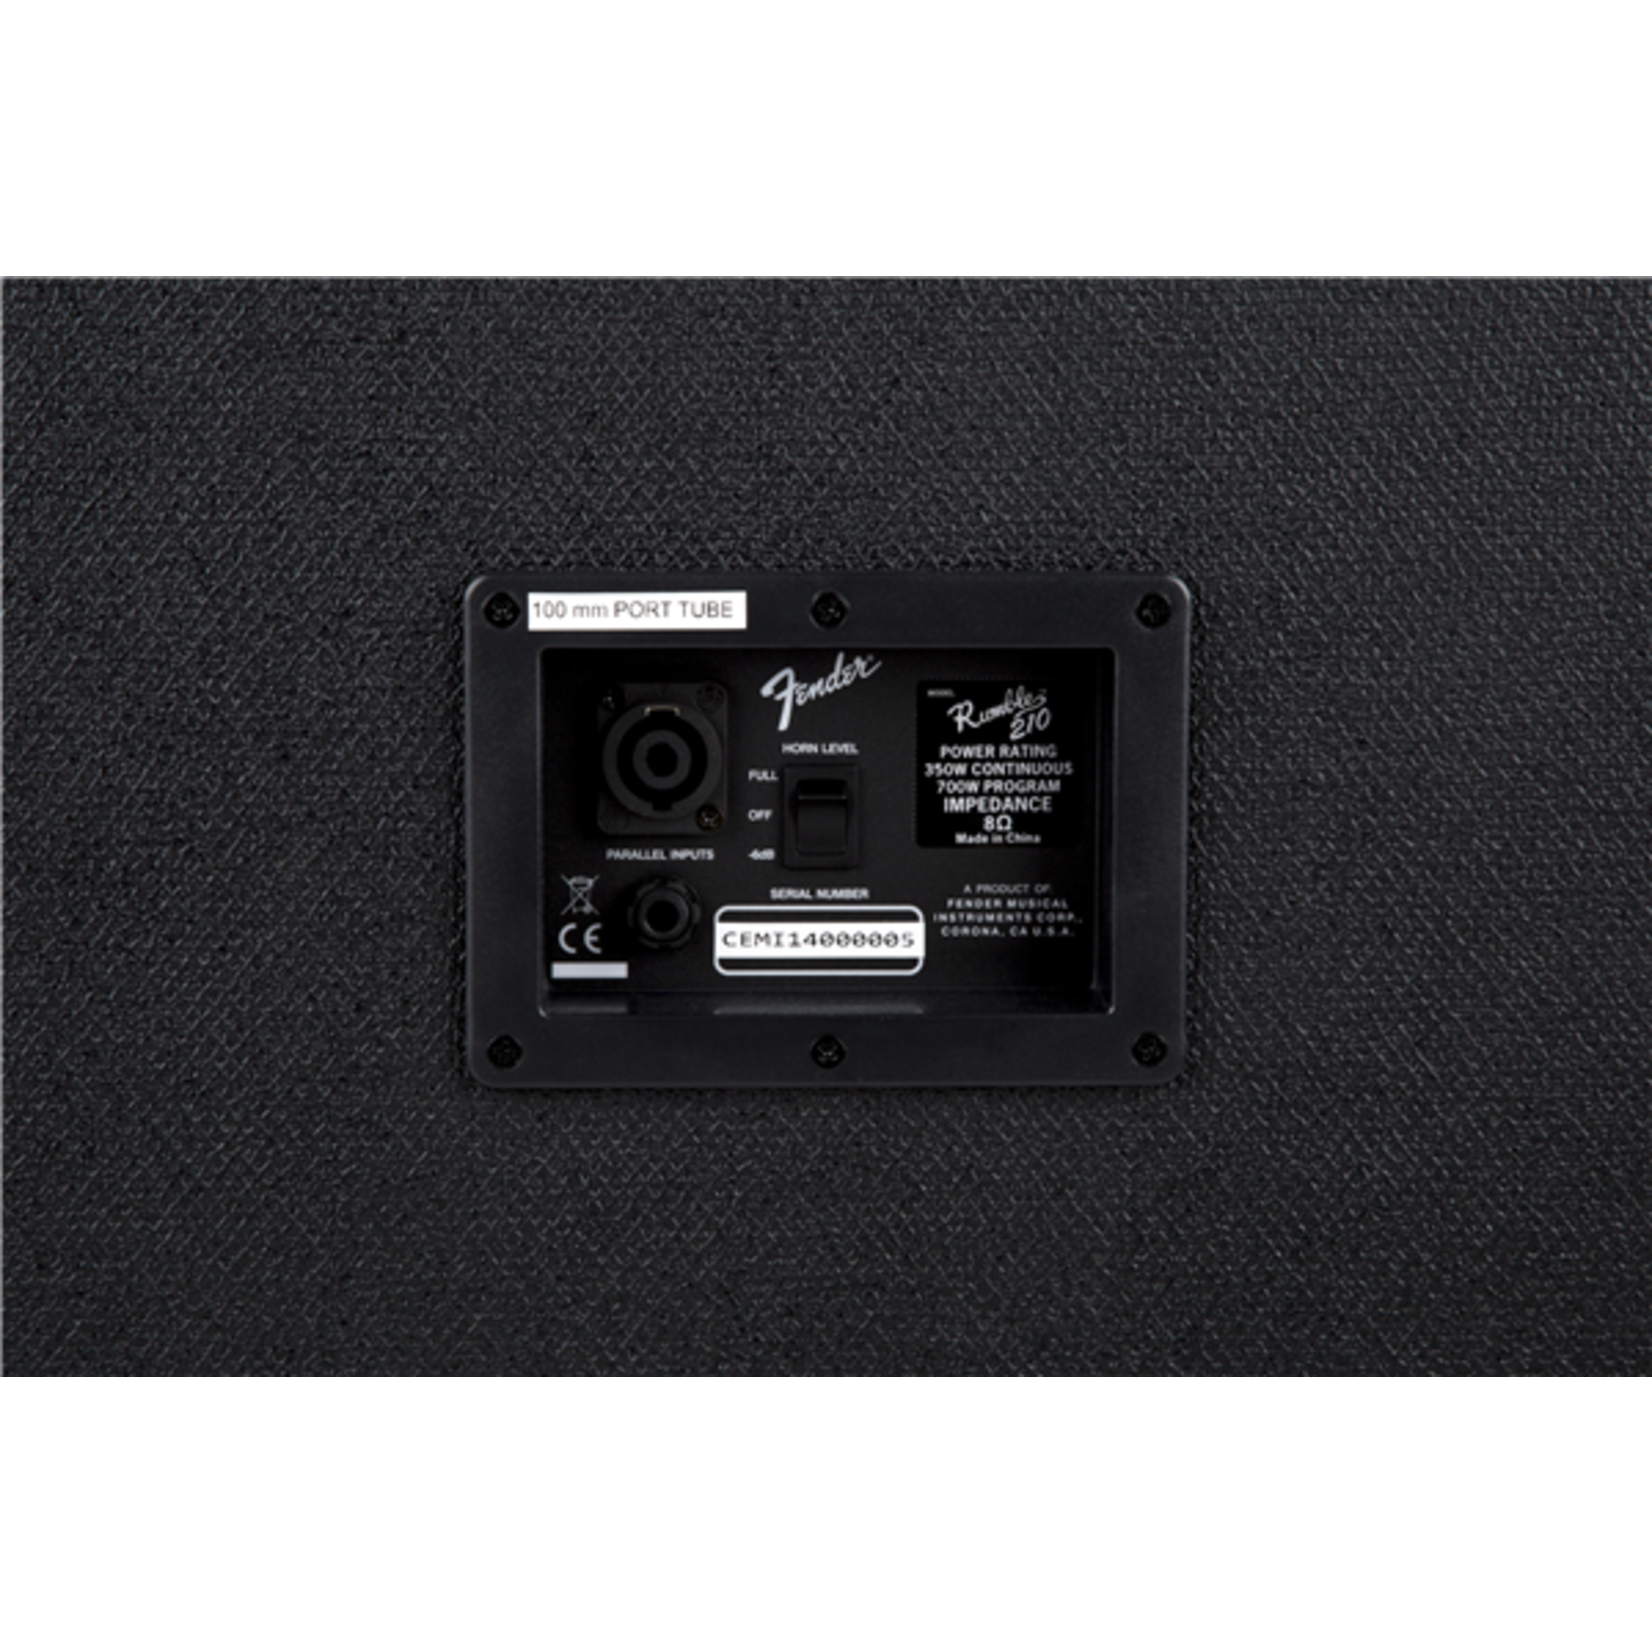 Fender Rumble™ 210 Cabinet (V3), Black/Black